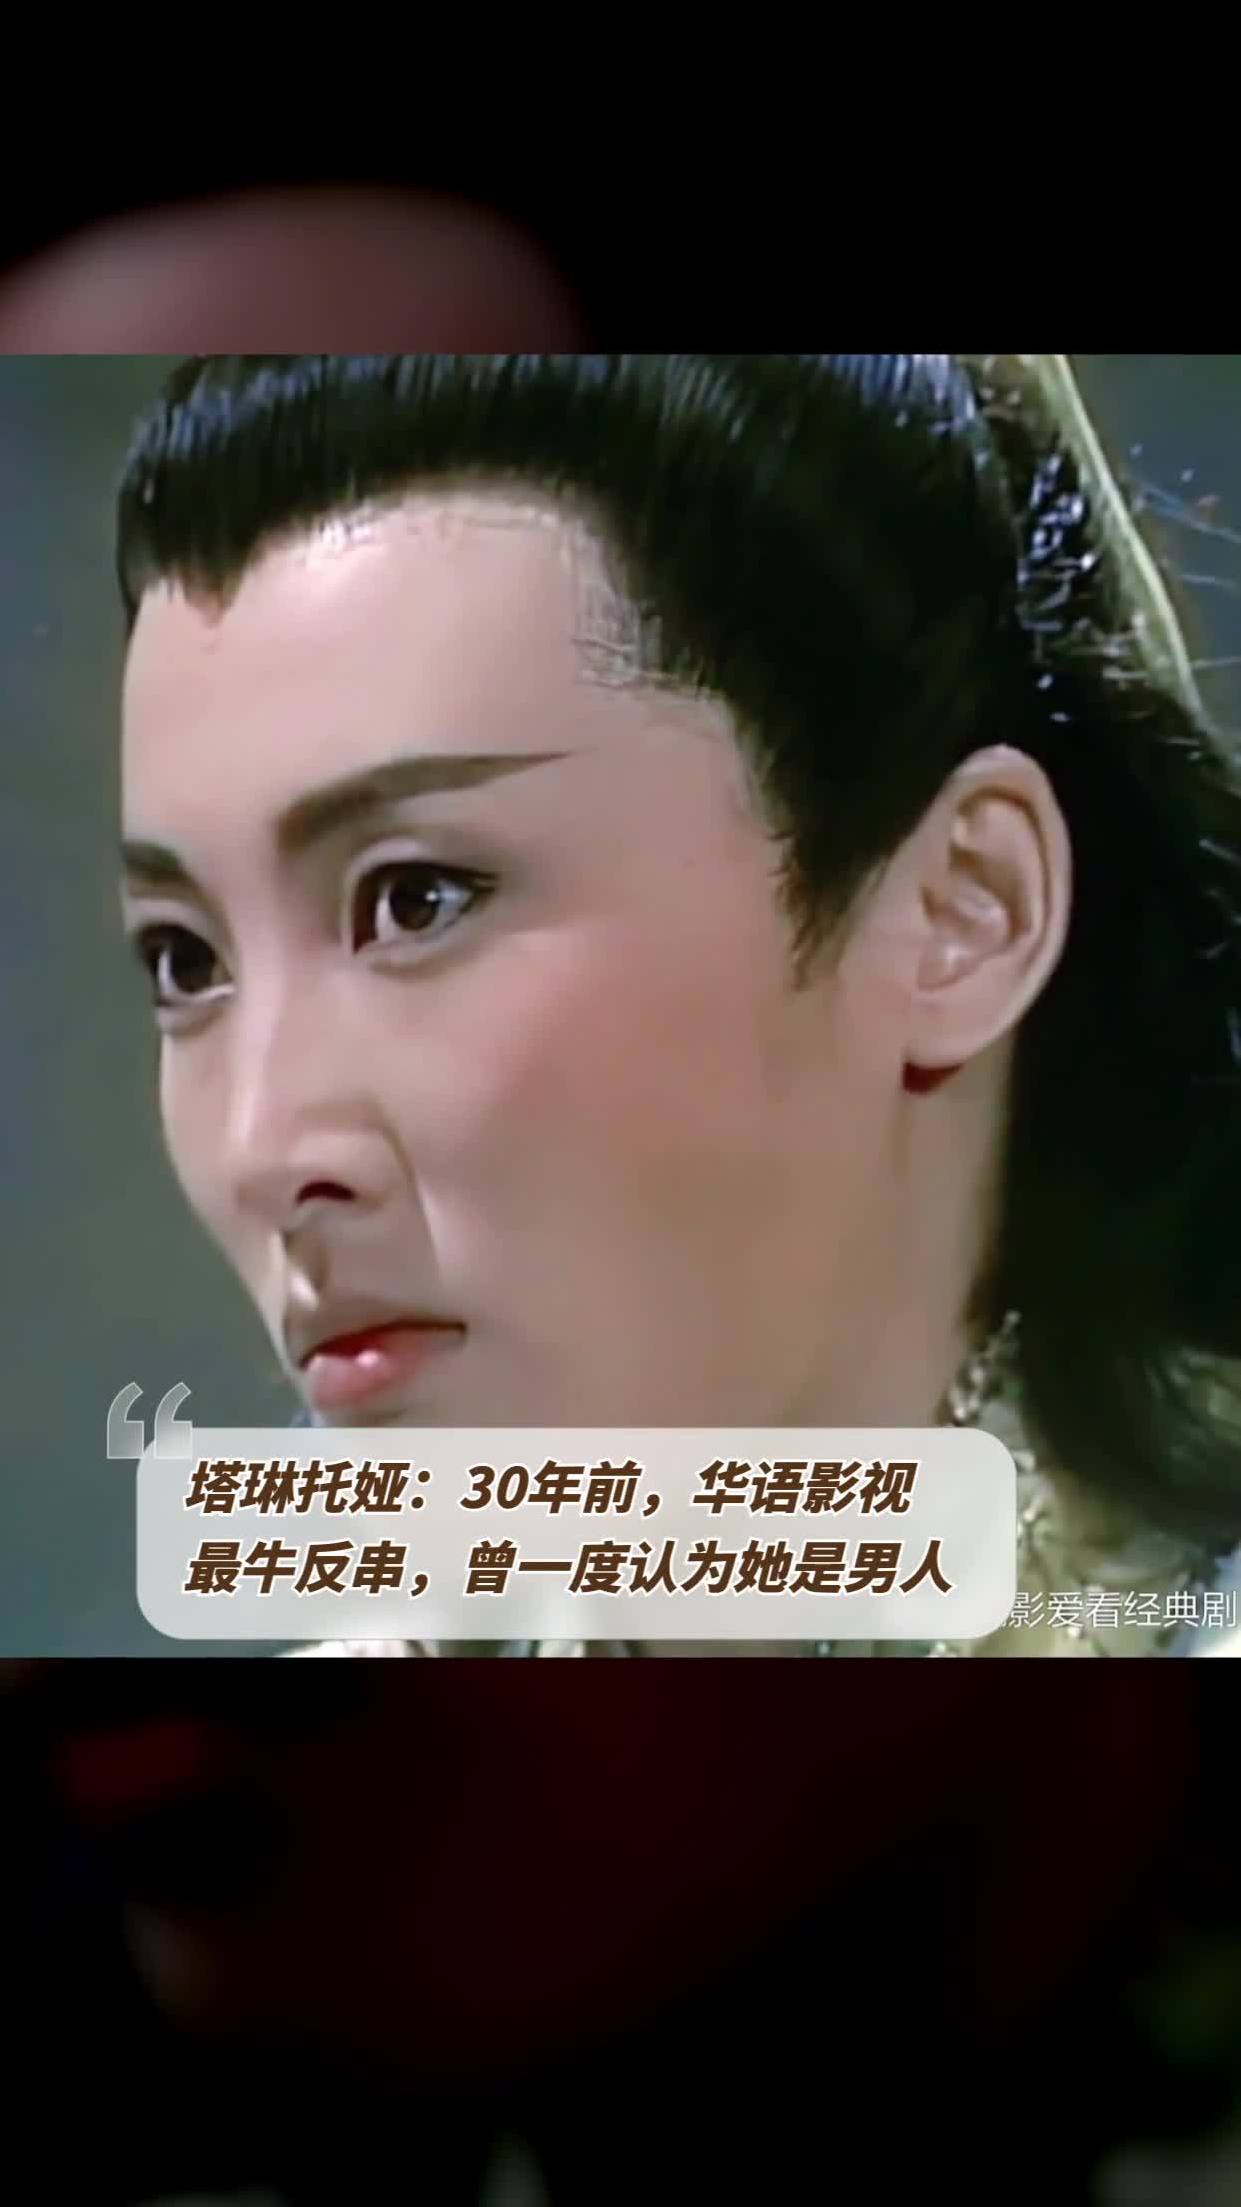 塔琳托娅:30年前,华语影视最牛反串,曾一度认为她是男人